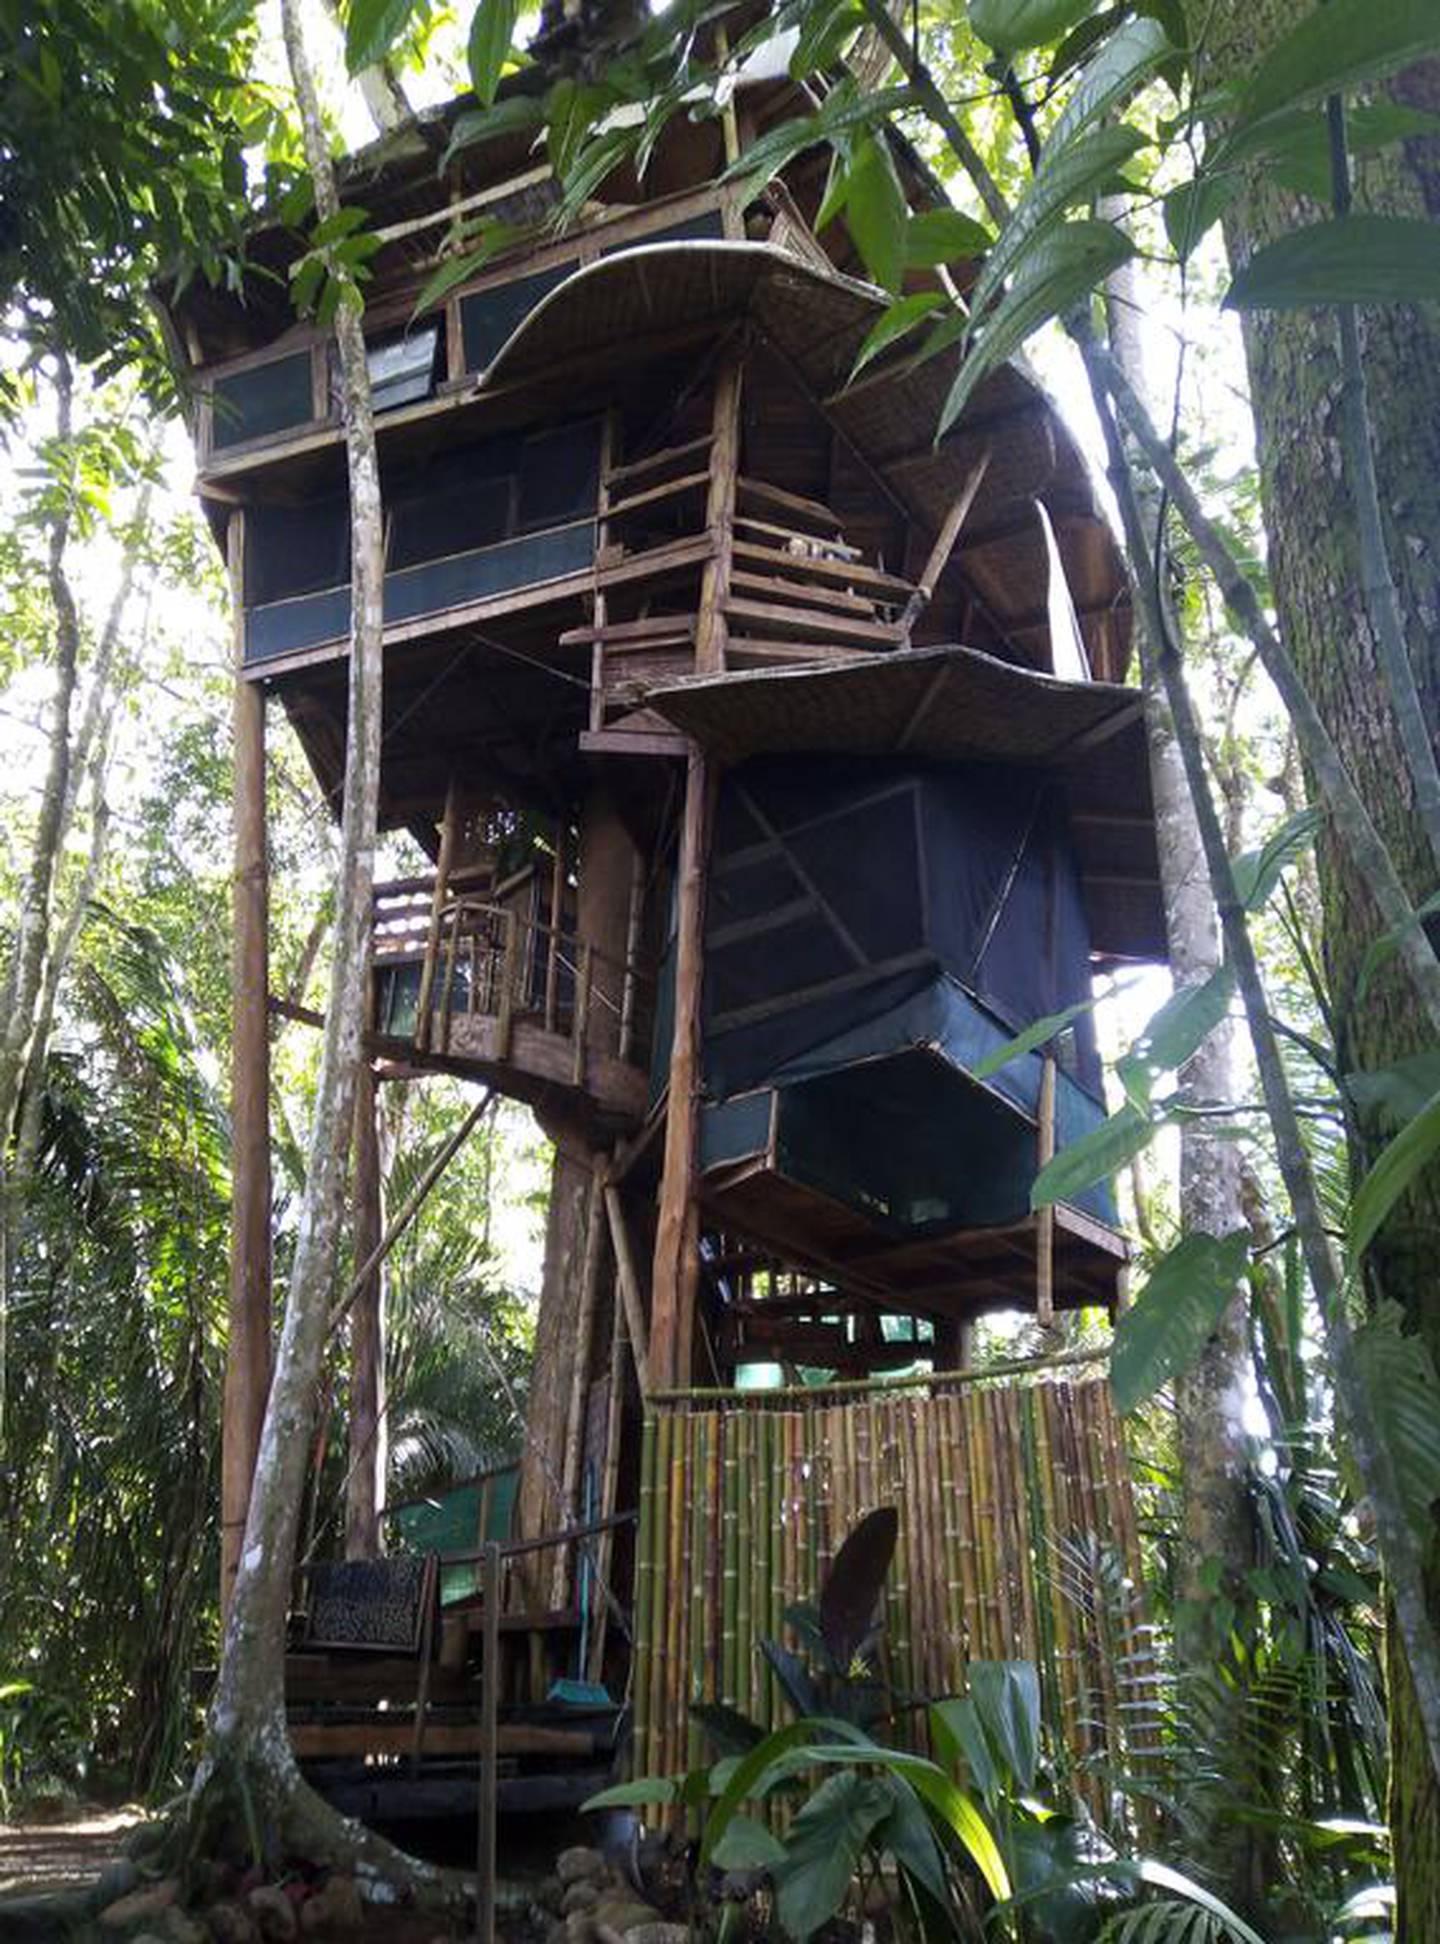 El estadounidense Michael Cranford se vino hace 20 años para Costa Rica y construyó una casa en un árbol en la península de Osa. Se quemó (hartó) de su trabajo y renunció.